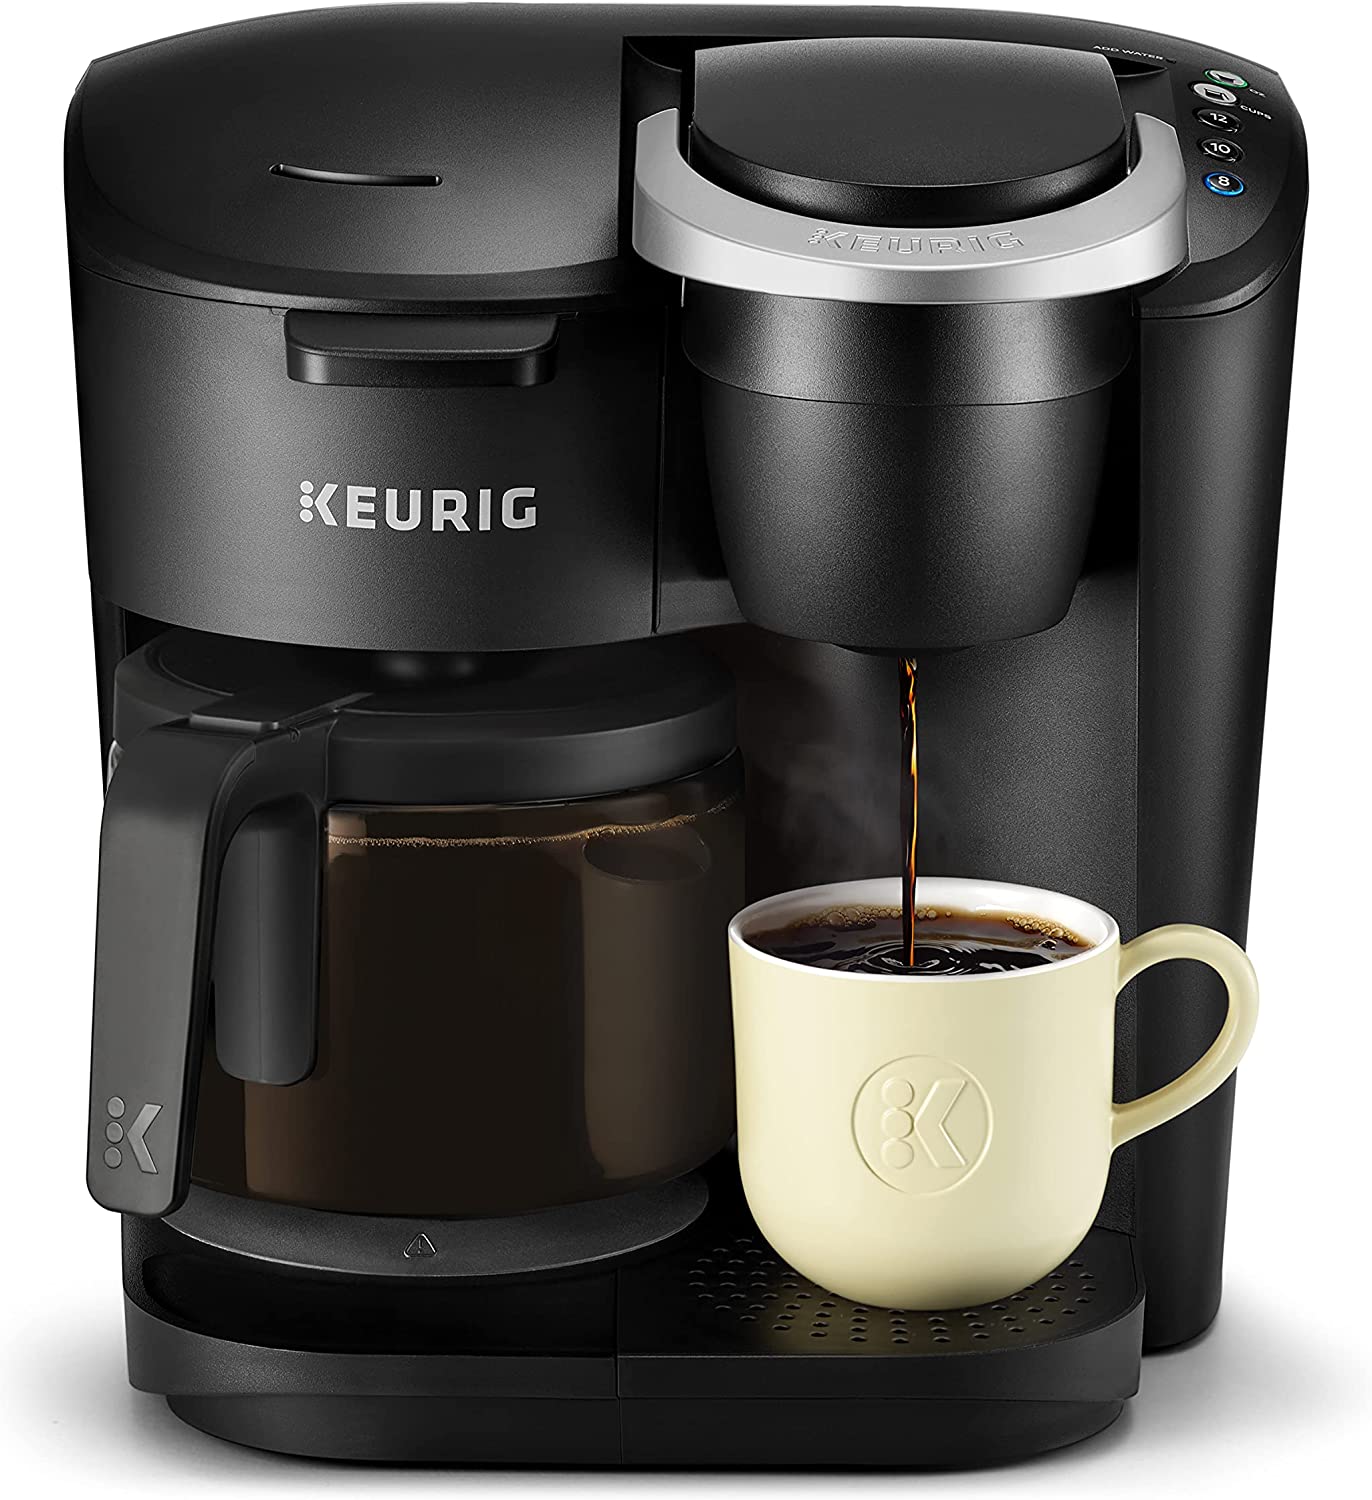 Keurig K-Duo Coffee Maker